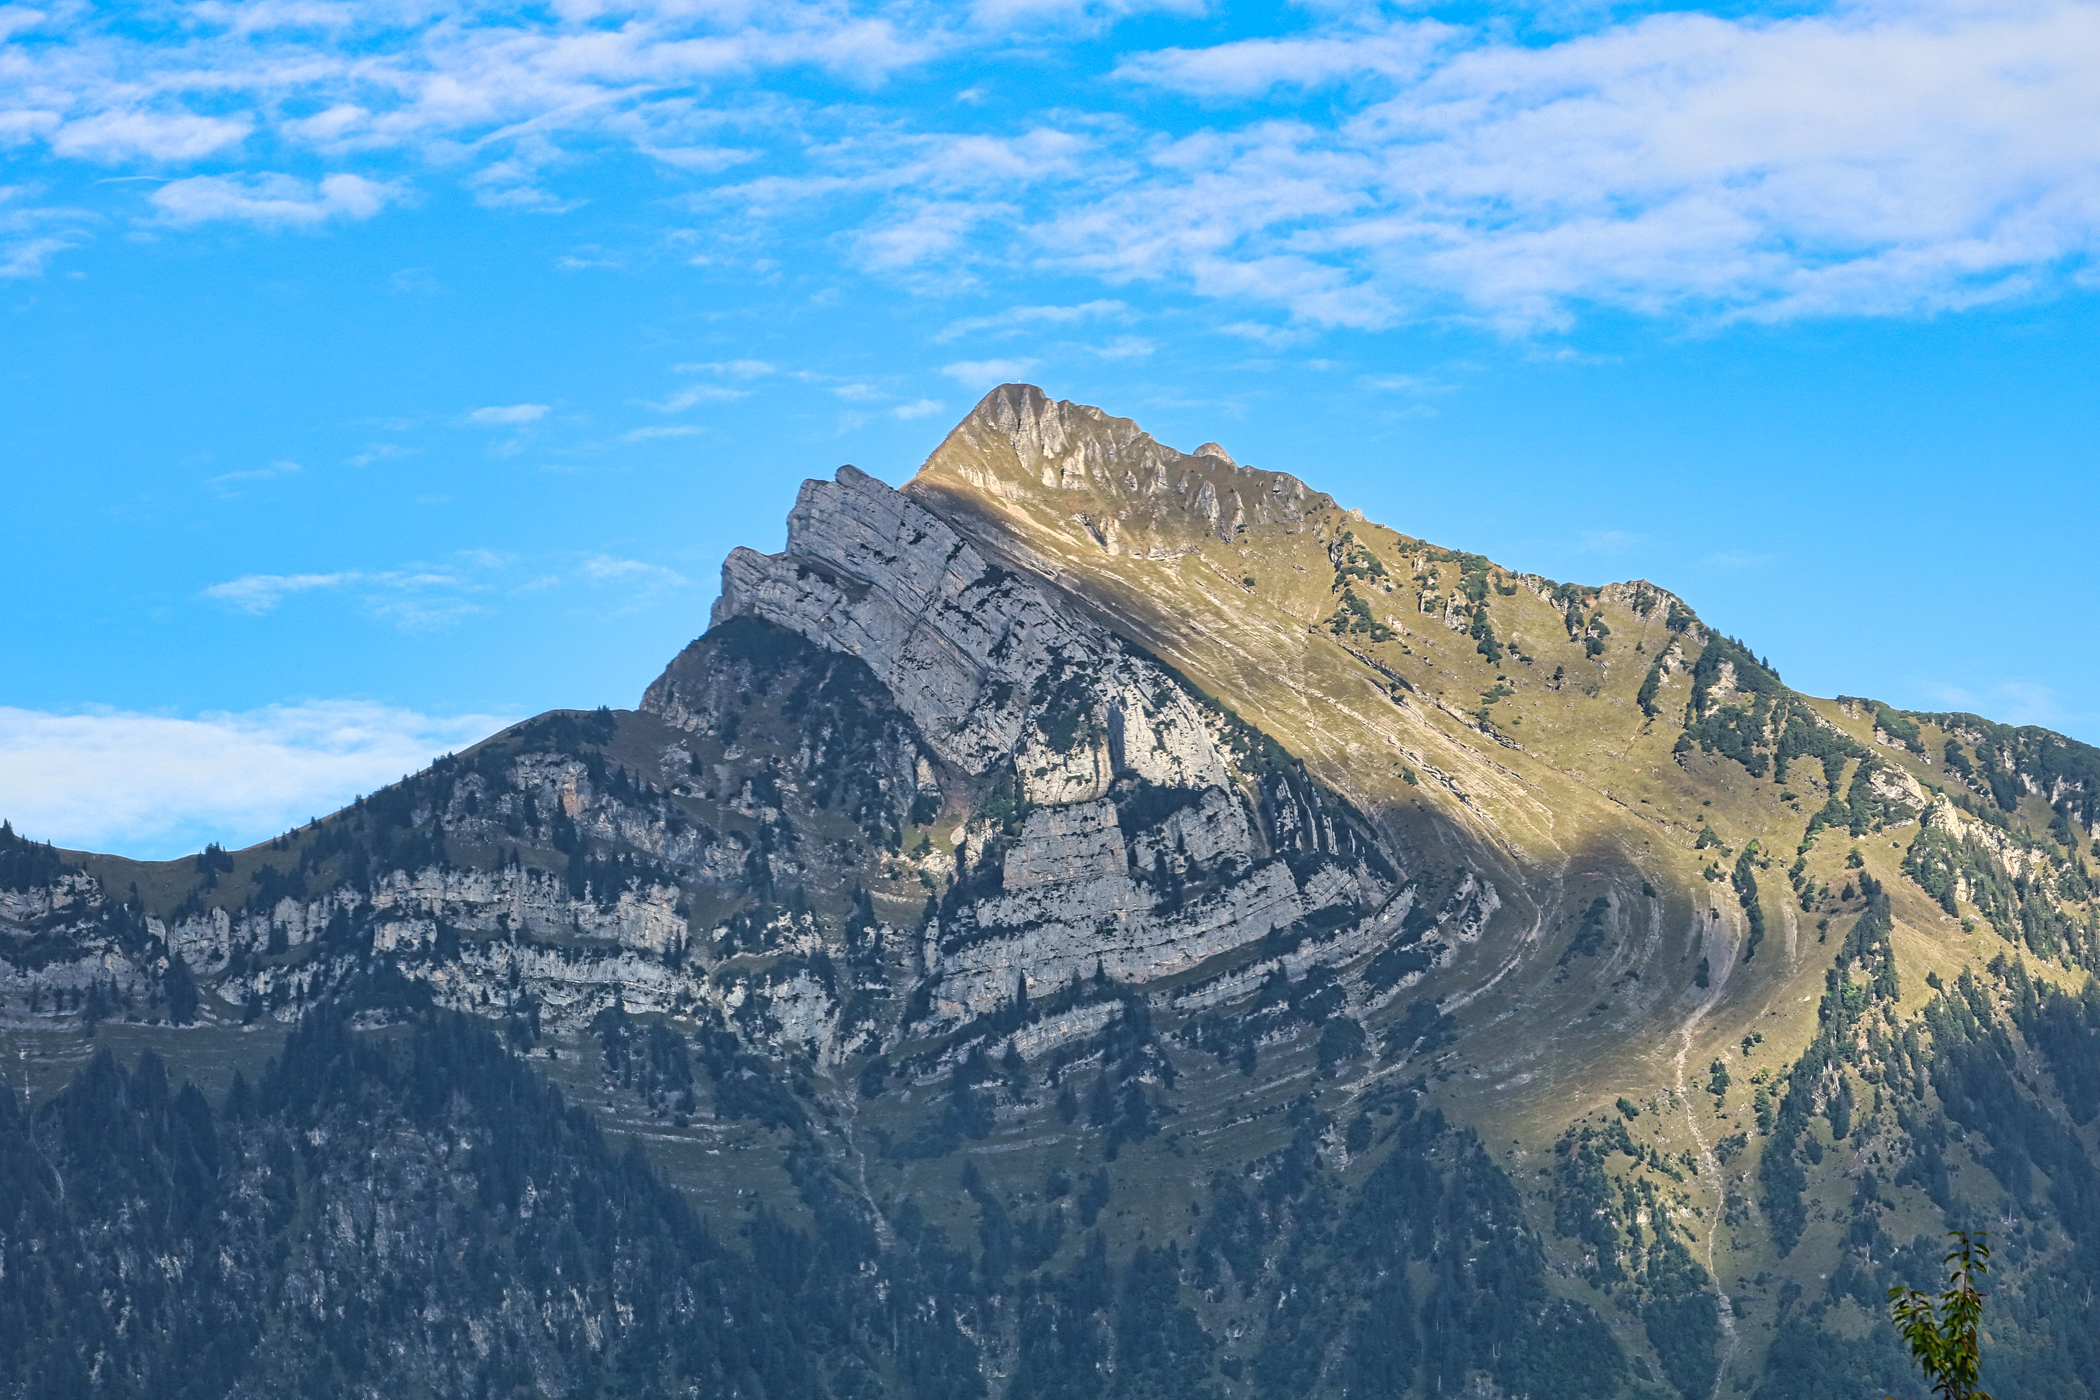 La déformation visible dans les Alpes témoigne de la collision tectonique qui est à l'origine de cette chaîne de montagnes. © Daniel Mennerich, Flickr, CC by-nc-sa 2.0 Deed